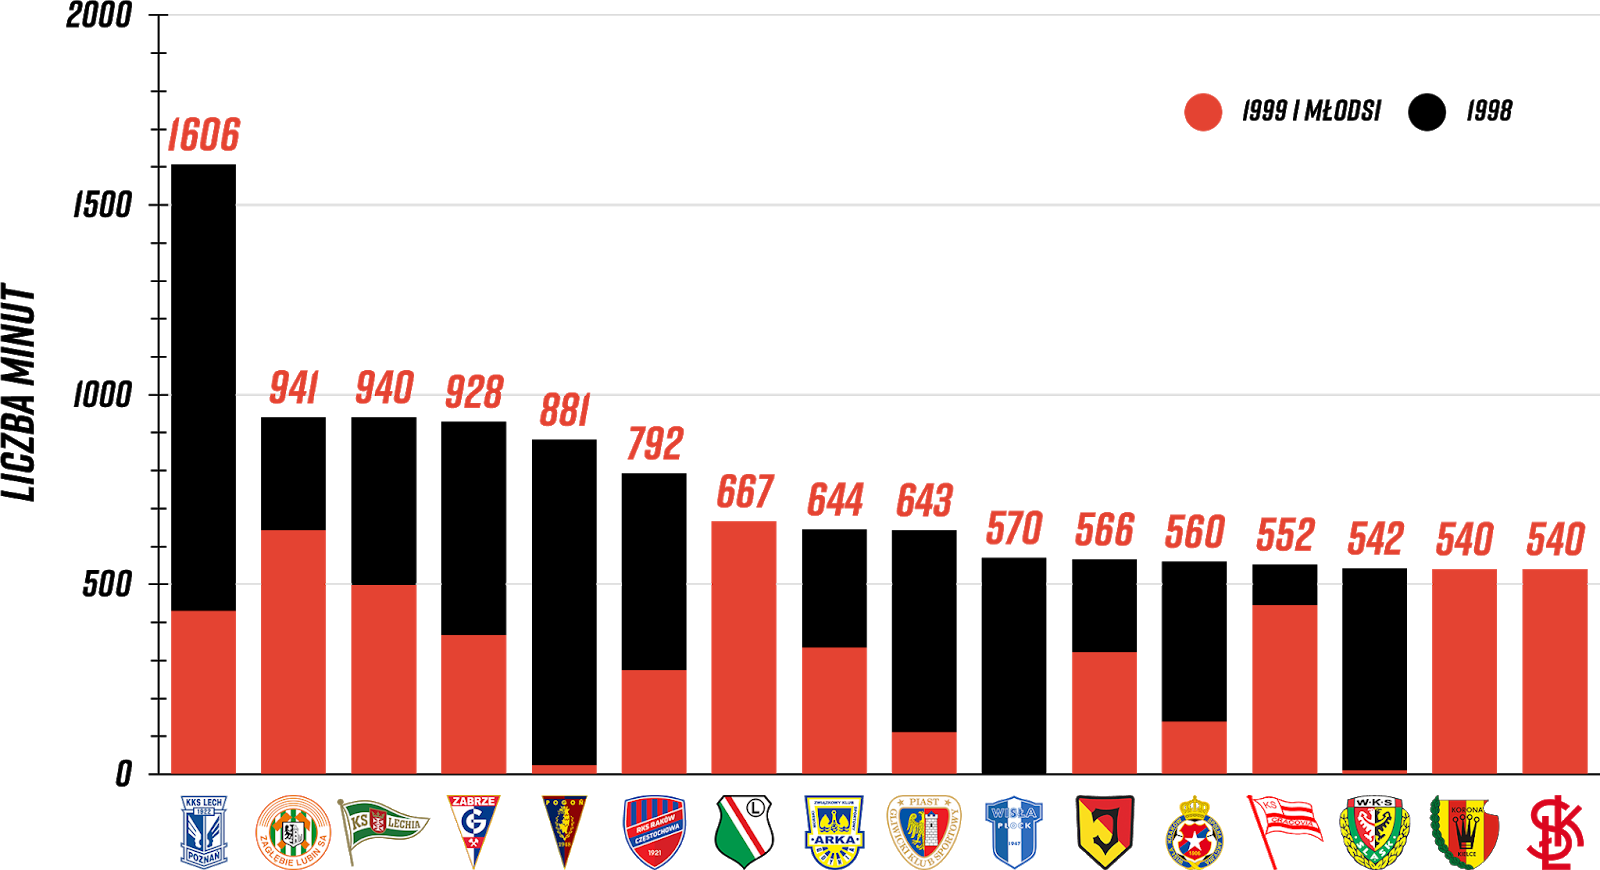 Klasyfikacja klubów pod względem rozegranych minut przez młodzieżowców po 6. kolejce PKO Ekstraklasy<br><br>Źródło: Opracowanie własne na podstawie ekstrastats.pl i 90minut.pl<br><br>graf. Bartosz Urban